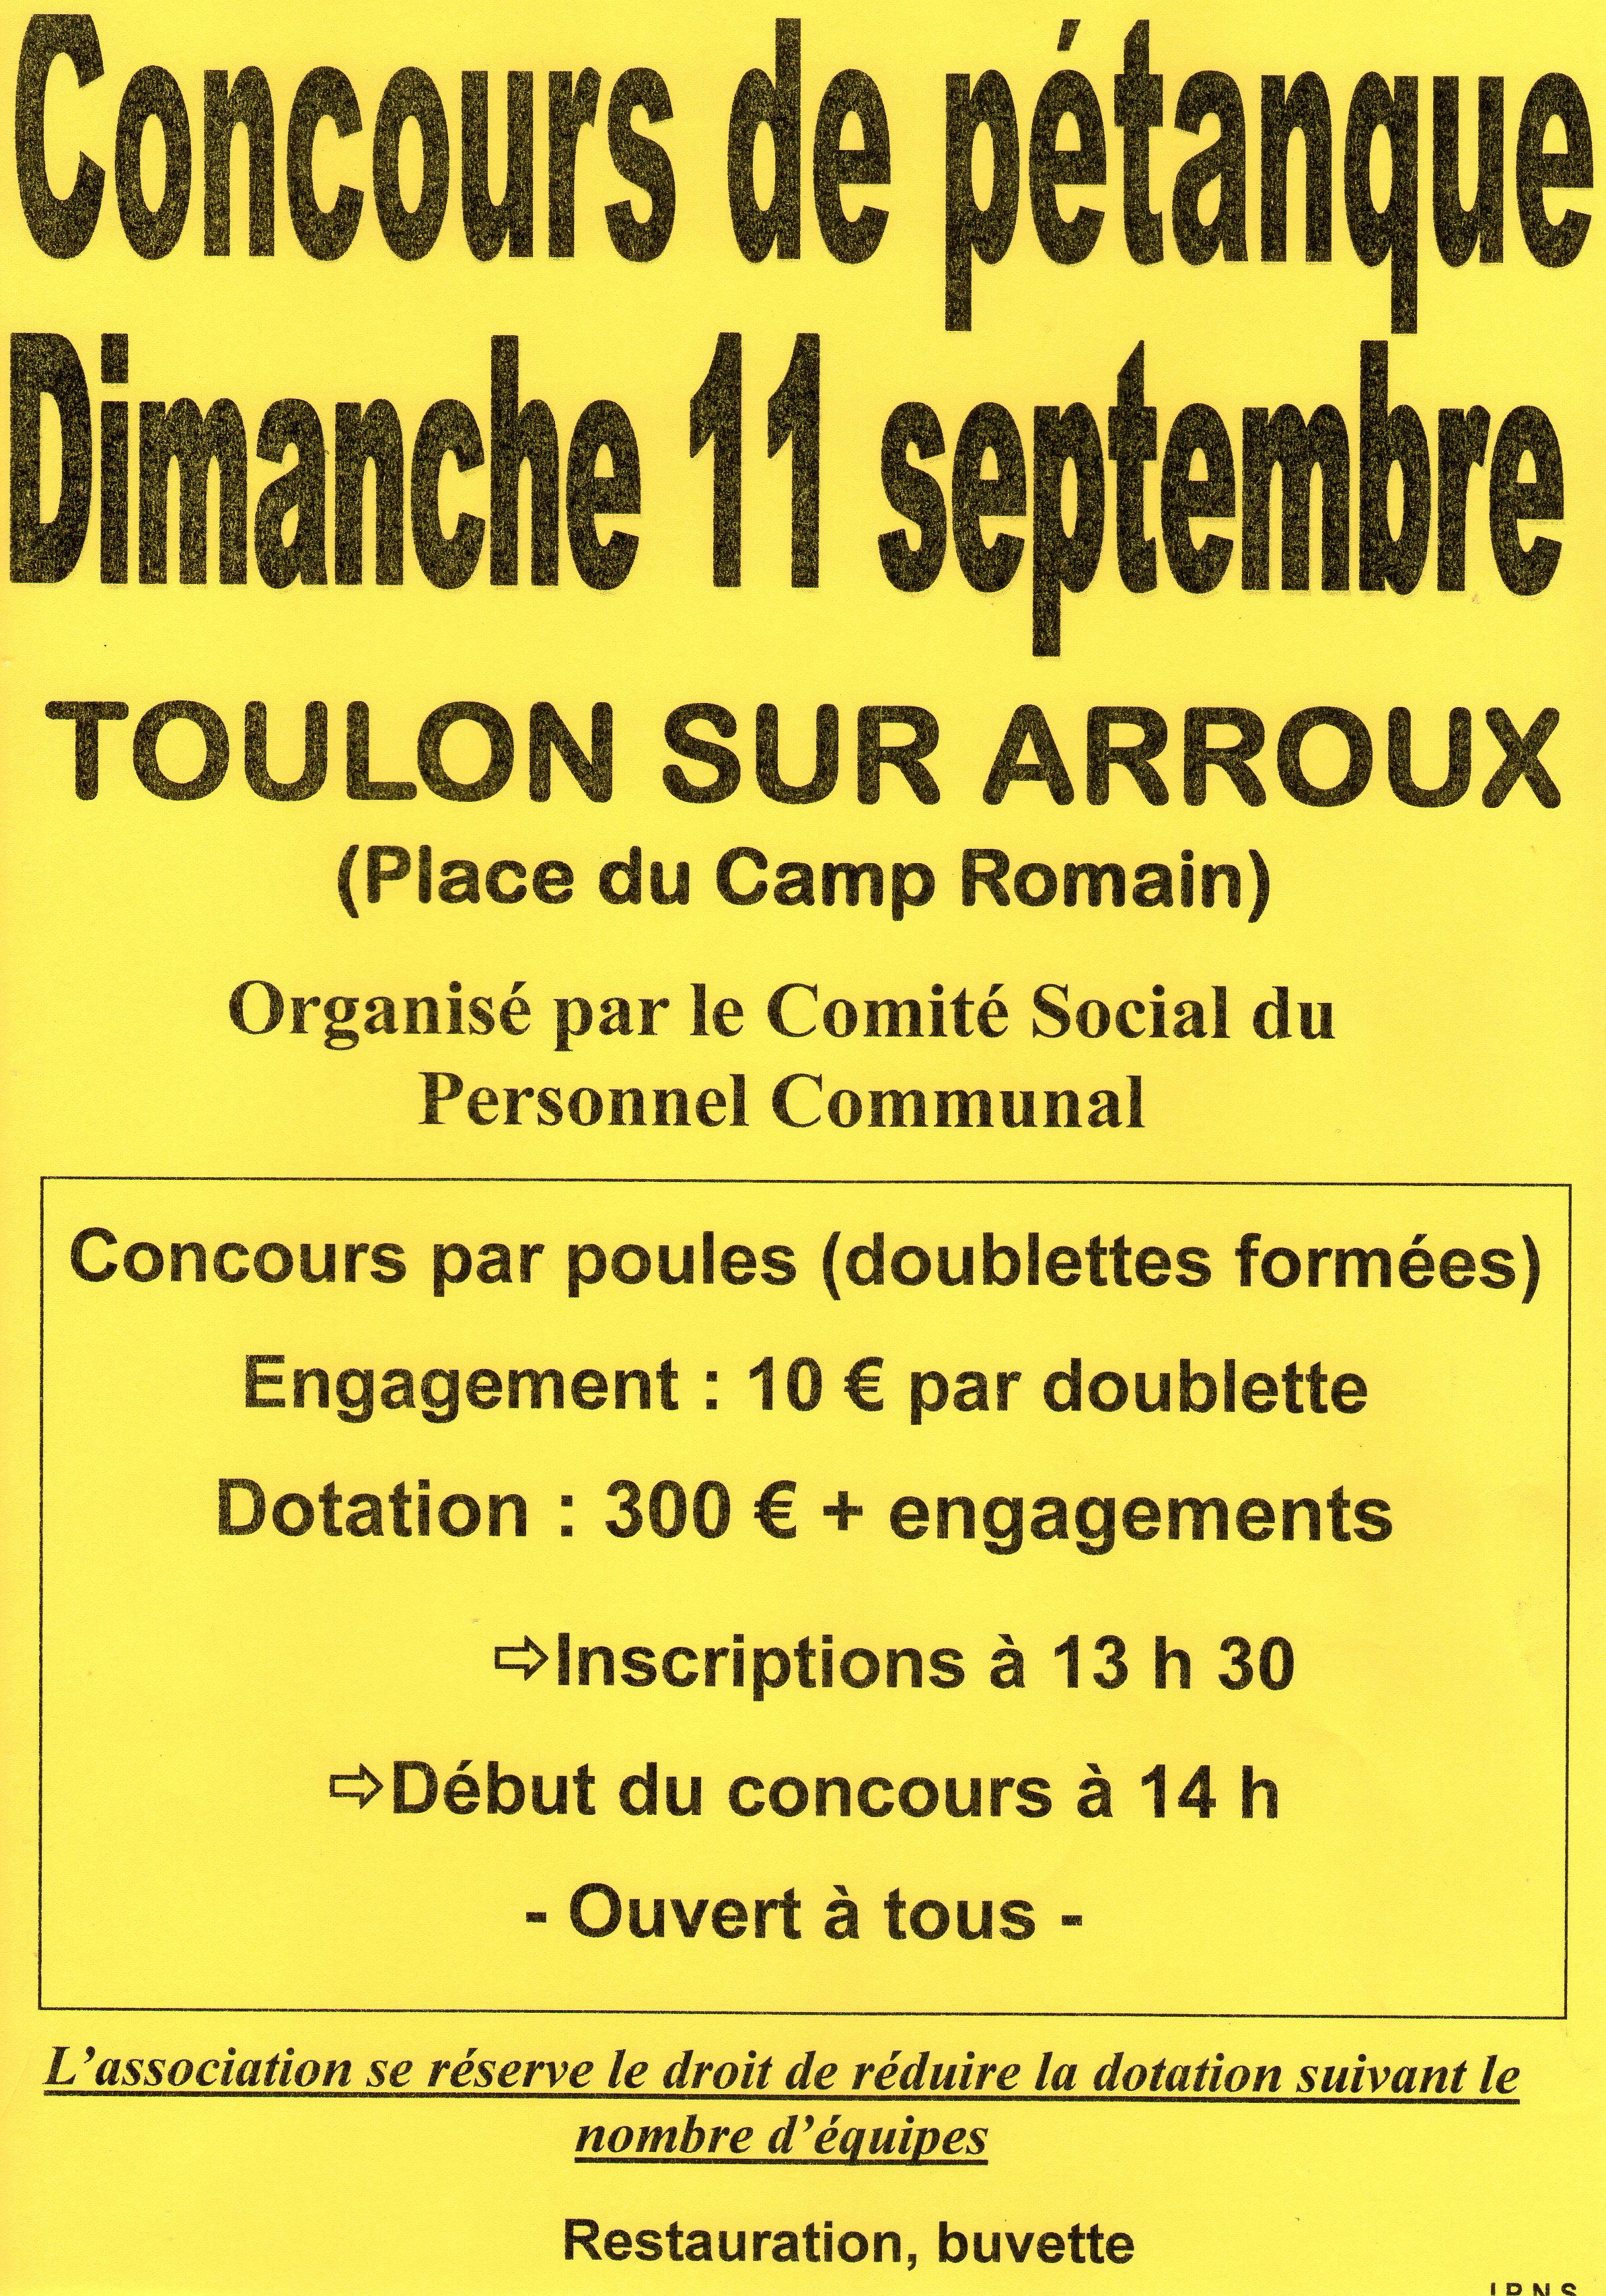 Concours dimanche 11 septembre 2016 à Toulon sur arroux